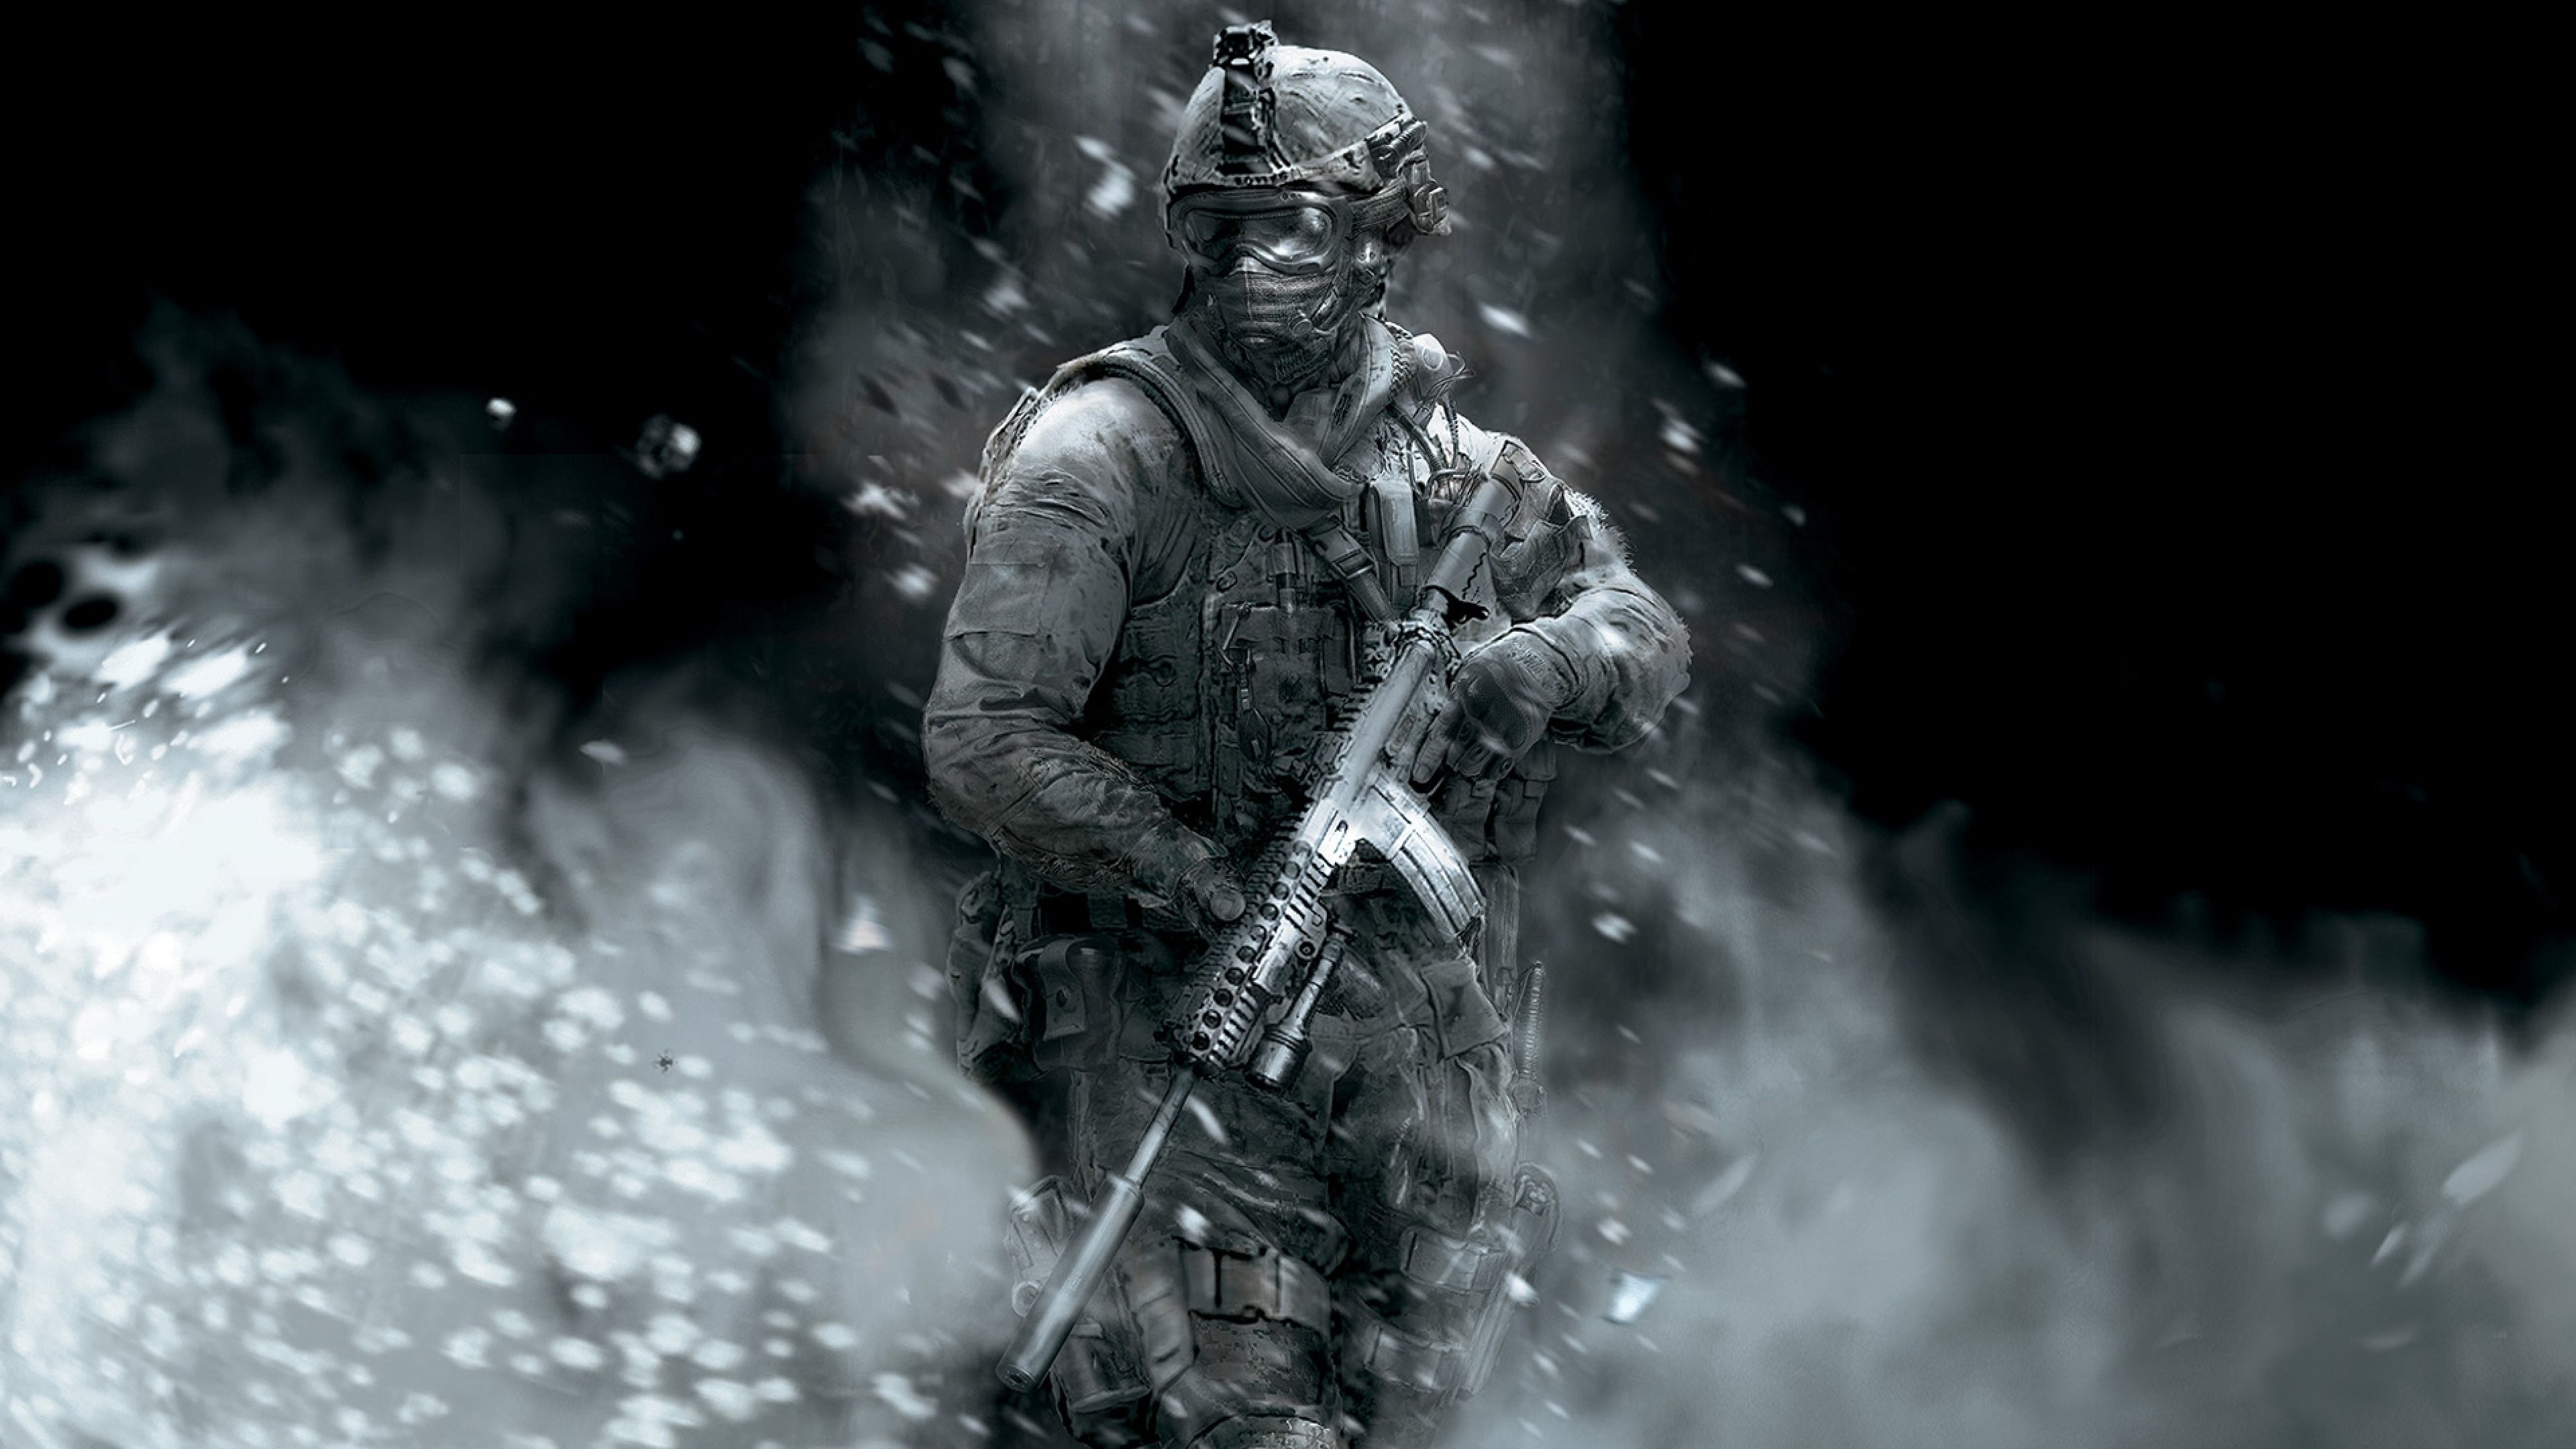 4k Ultra HD Call Of Duty Wallpaper Hd, Desktop Background Modern Warfare 2